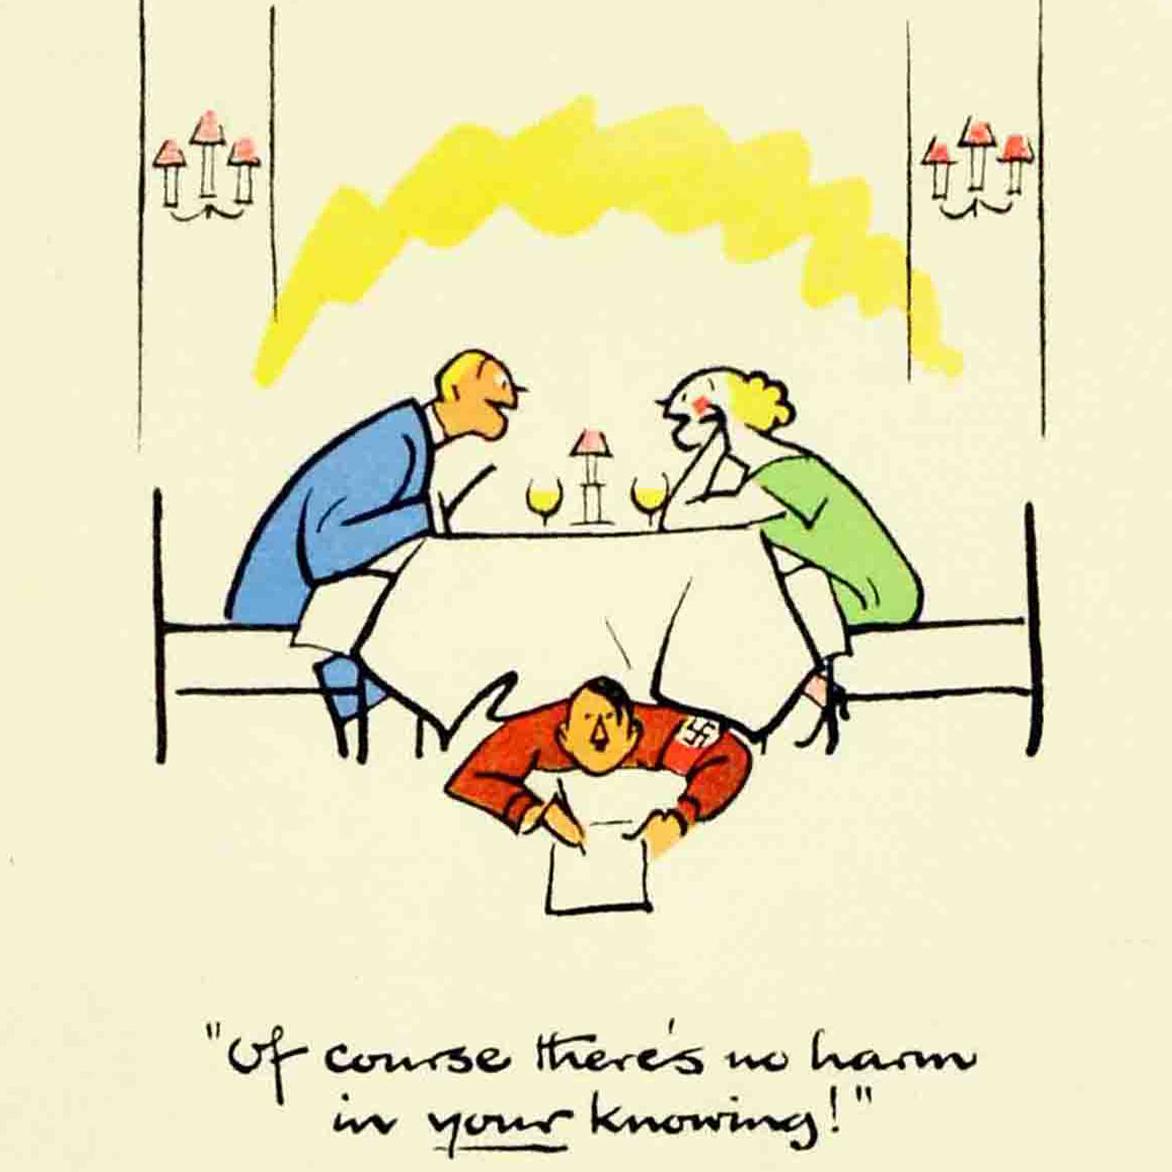 Affiche originale de la Seconde Guerre mondiale réalisée par le célèbre dessinateur et illustrateur britannique Fougasse (Cyril Kenneth Bird ; 1887-1965), issue de la populaire série iconique de propagande de guerre Careless Talk Costs Lives publiée